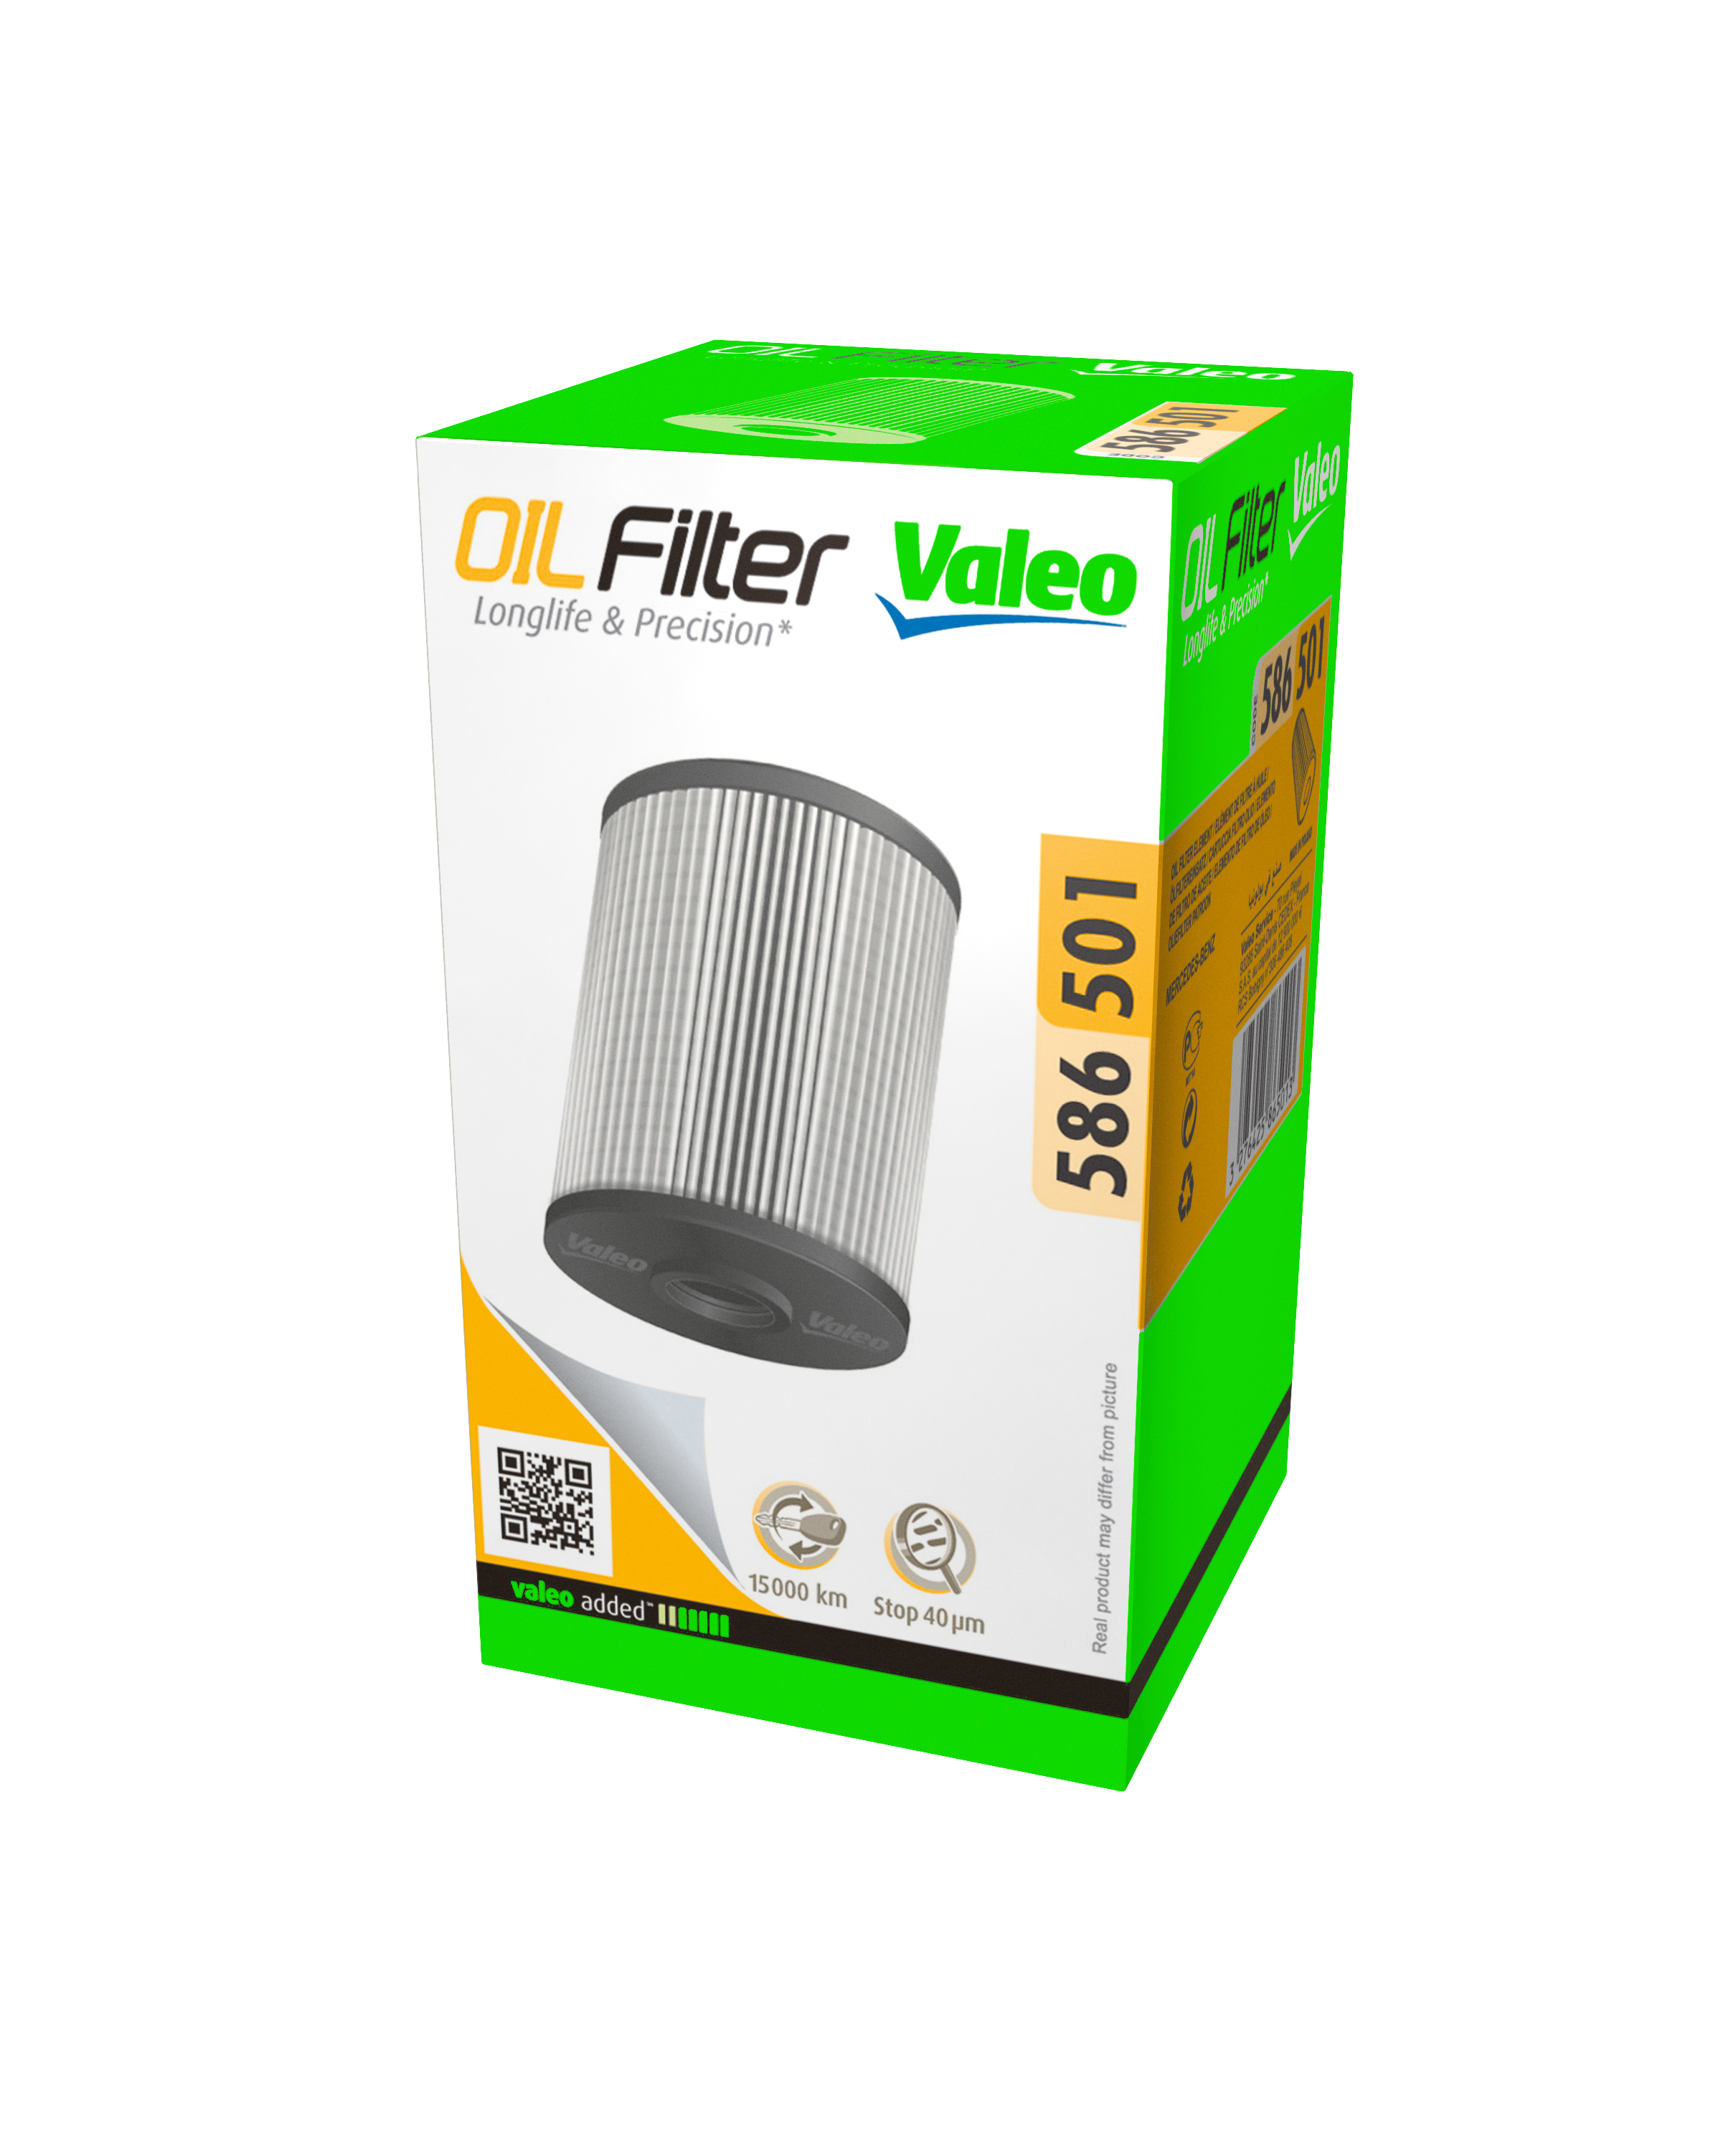 Valeo Oil filter packaging